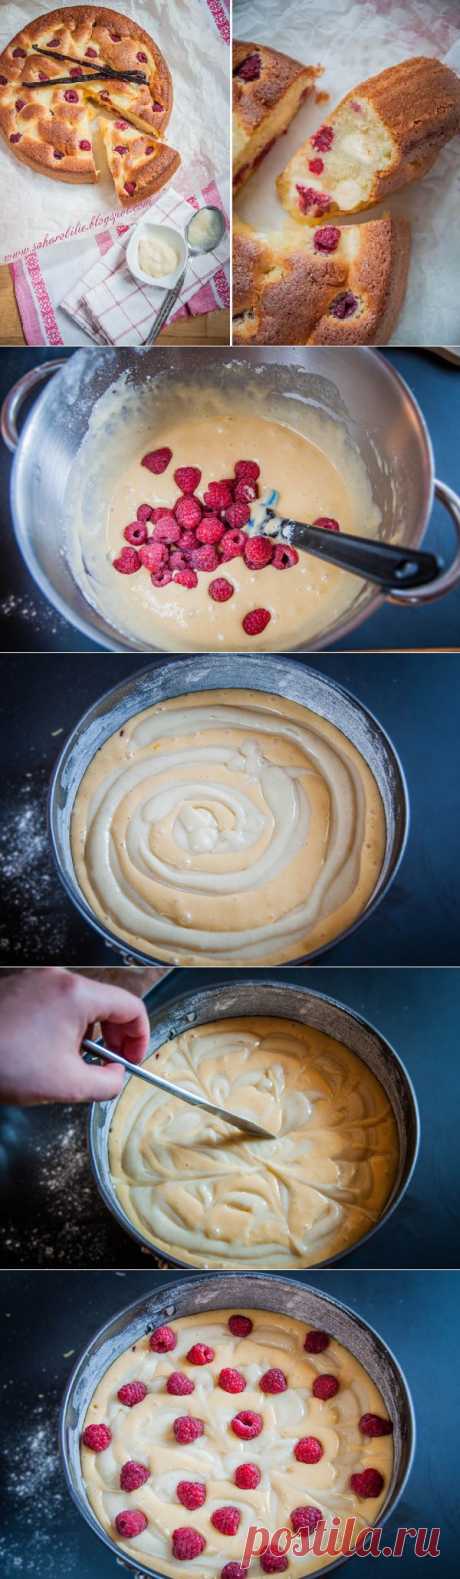 Лучший рецепт малинового пирога с заварным кремом.